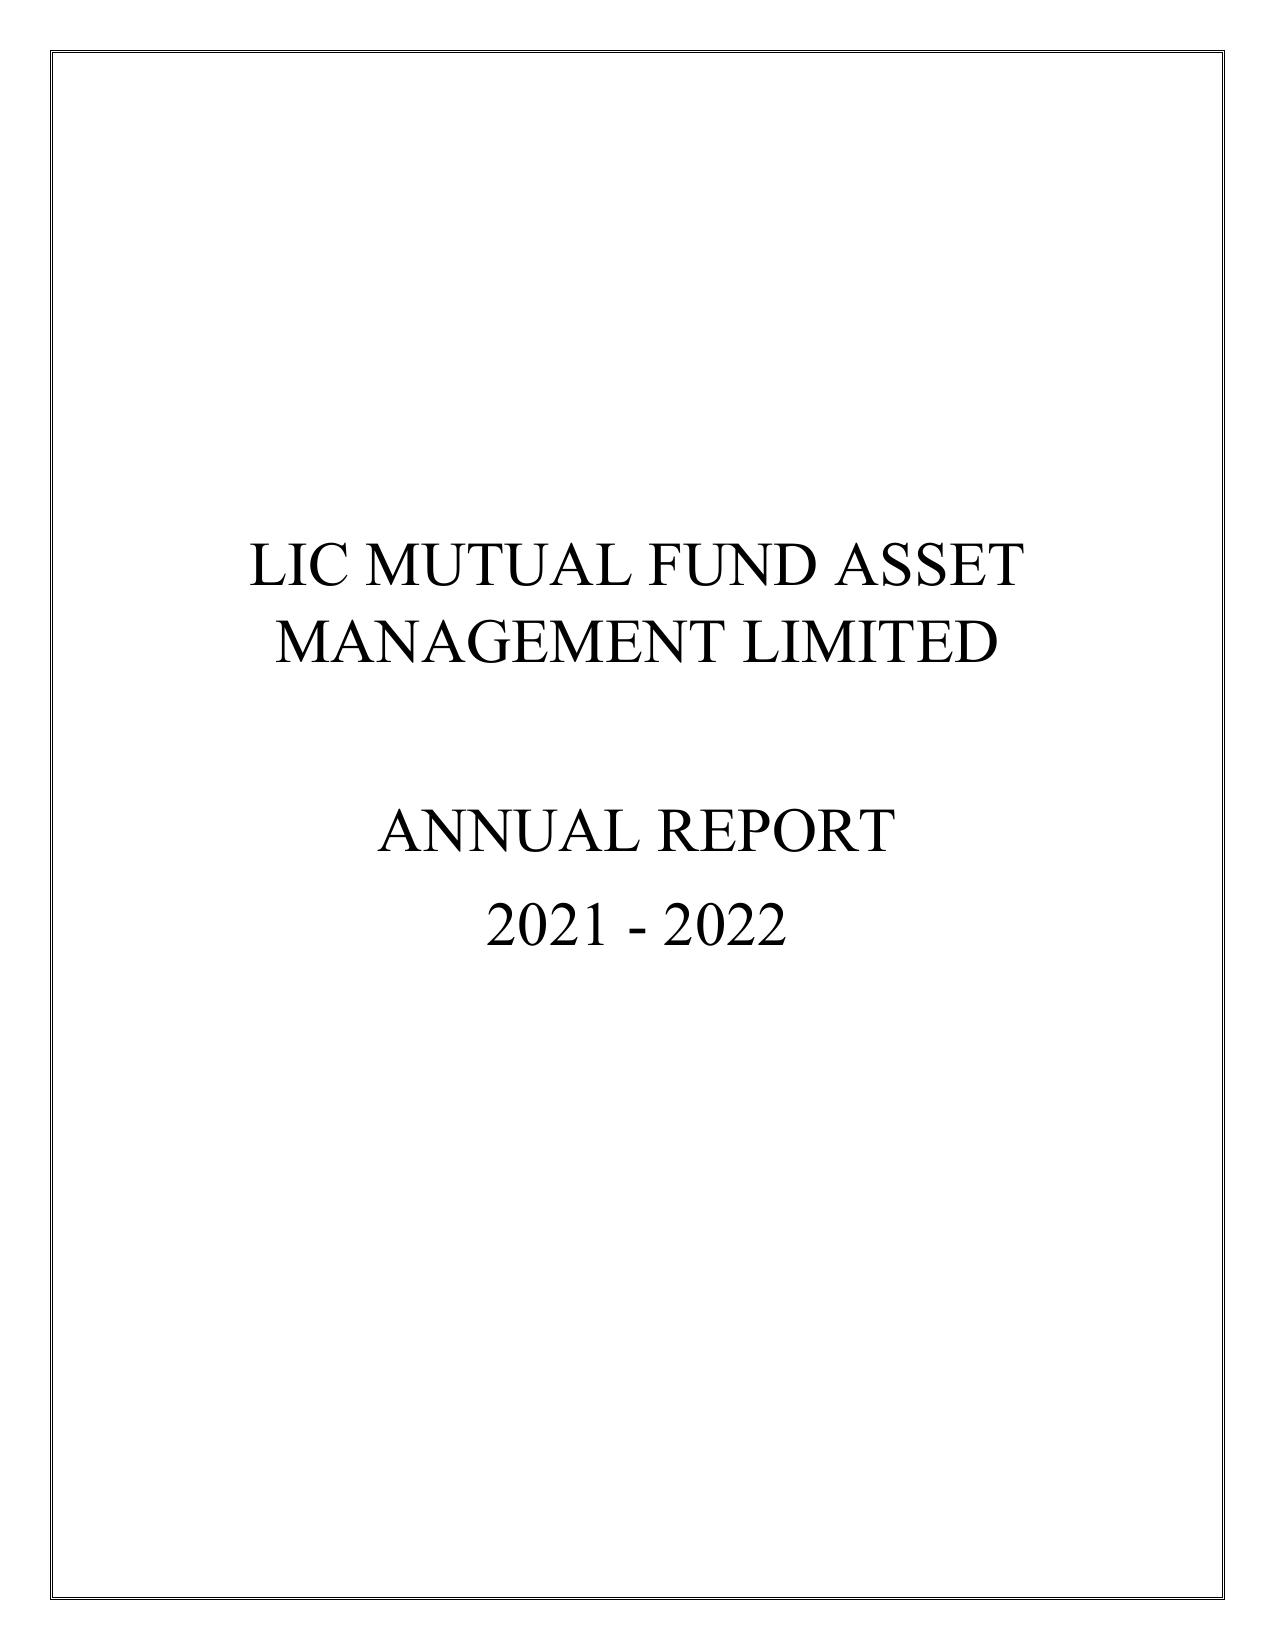 LICMF 2022 Annual Report